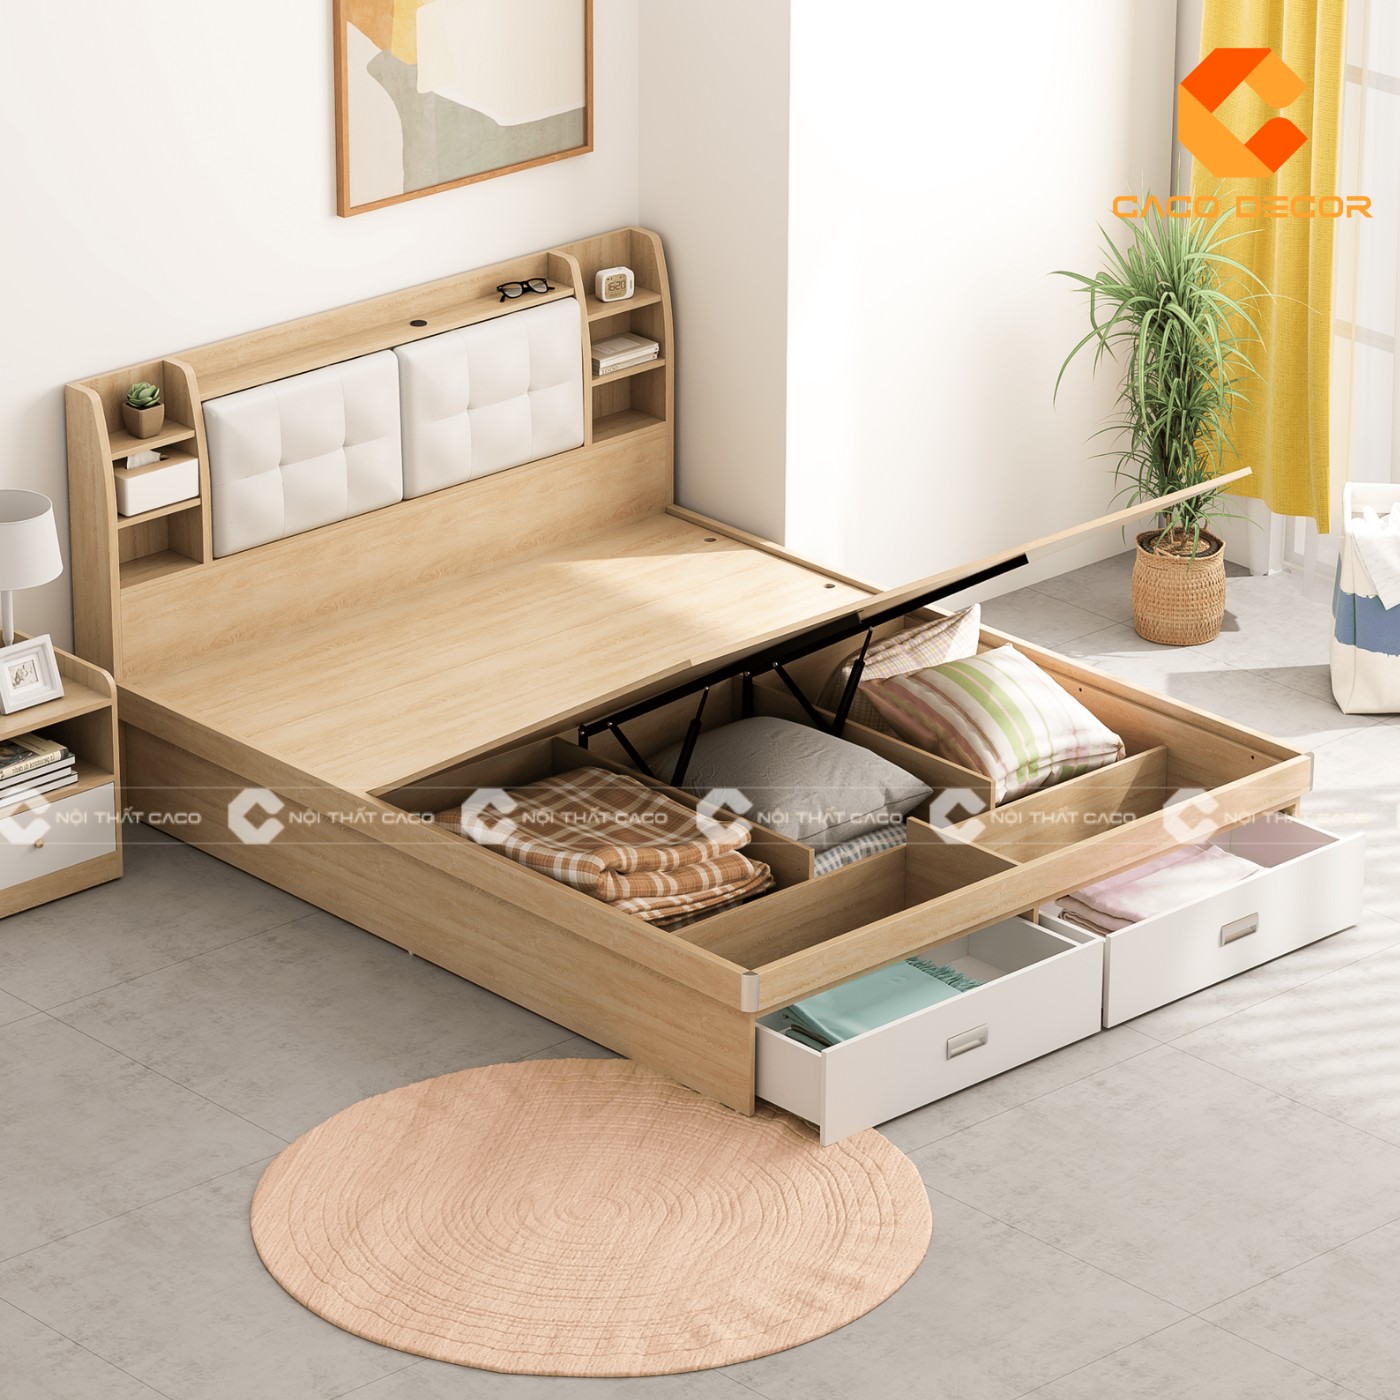 Giường ngủ gỗ công nghiệp đẹp, chất lượng với giá tốt nhất thị trường 10